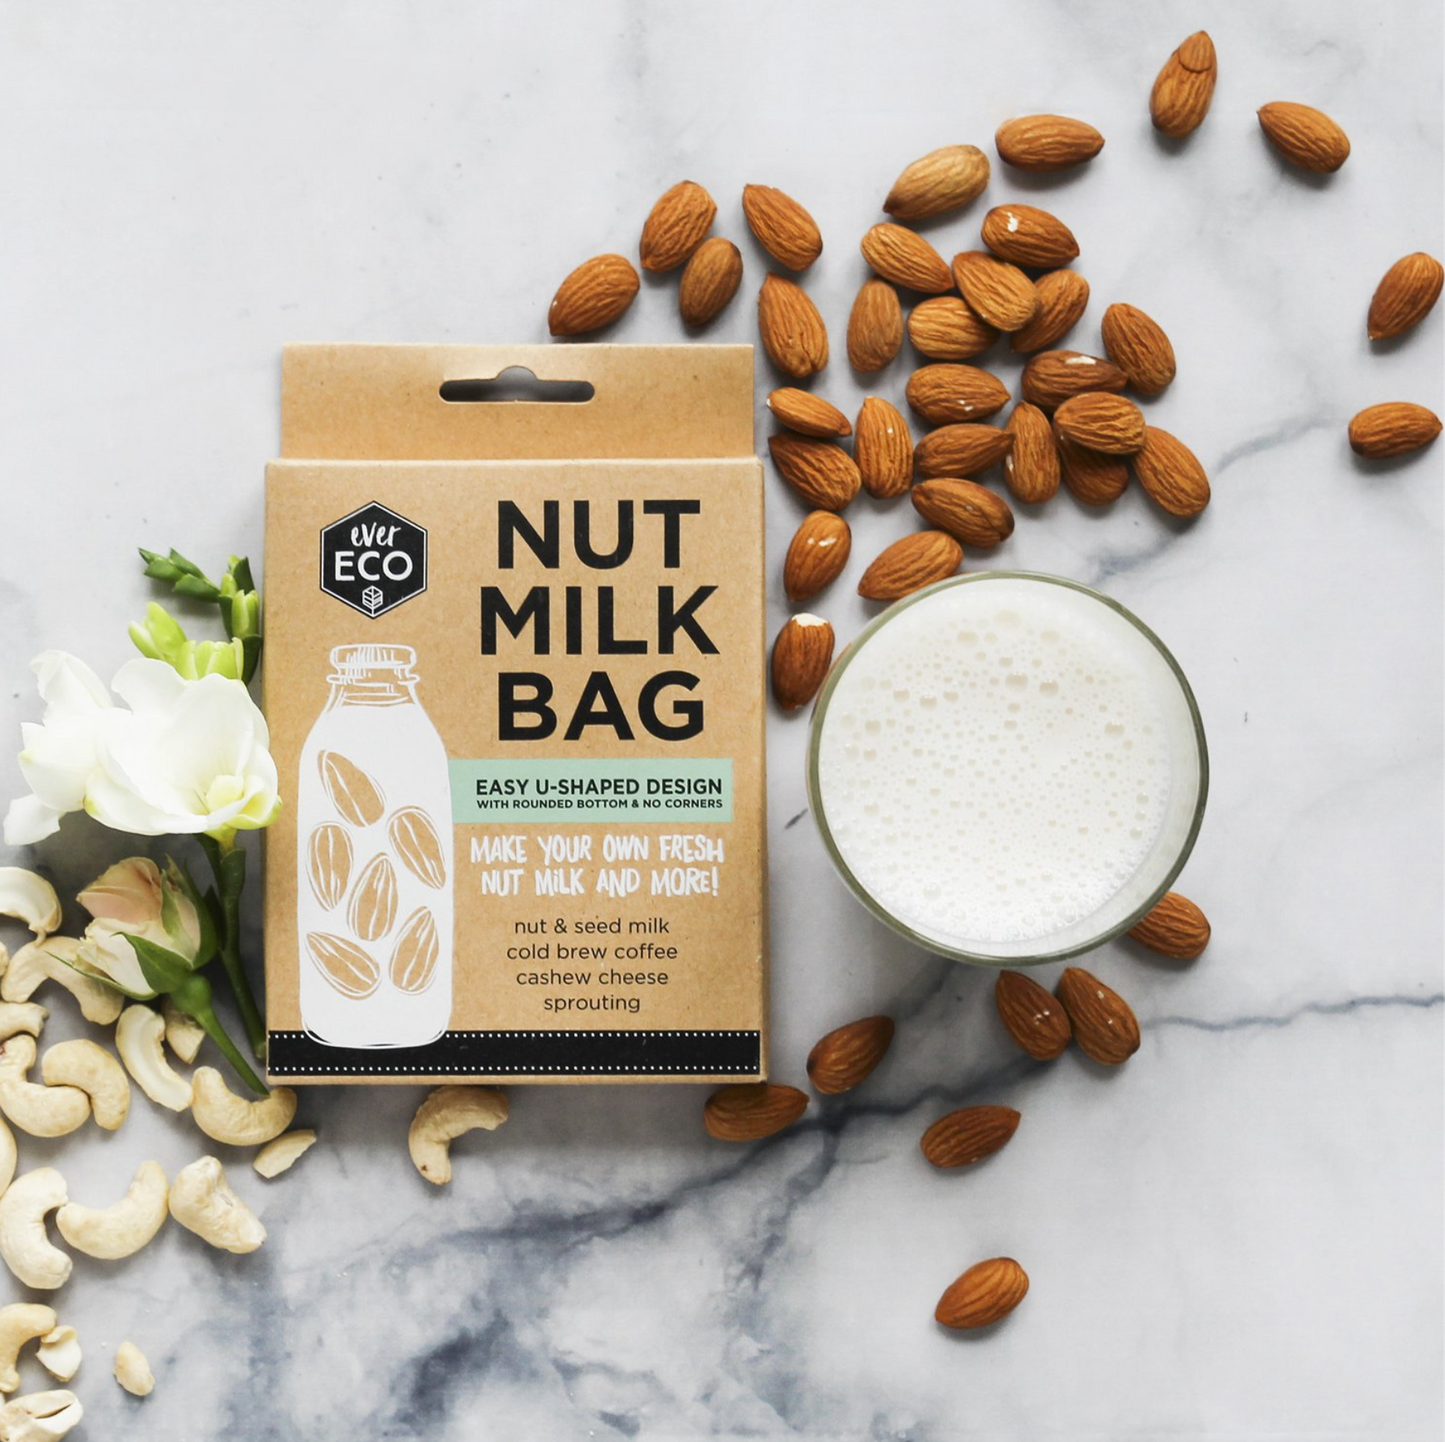 Ever Eco Nut Milk Bag, U-Shaped Design